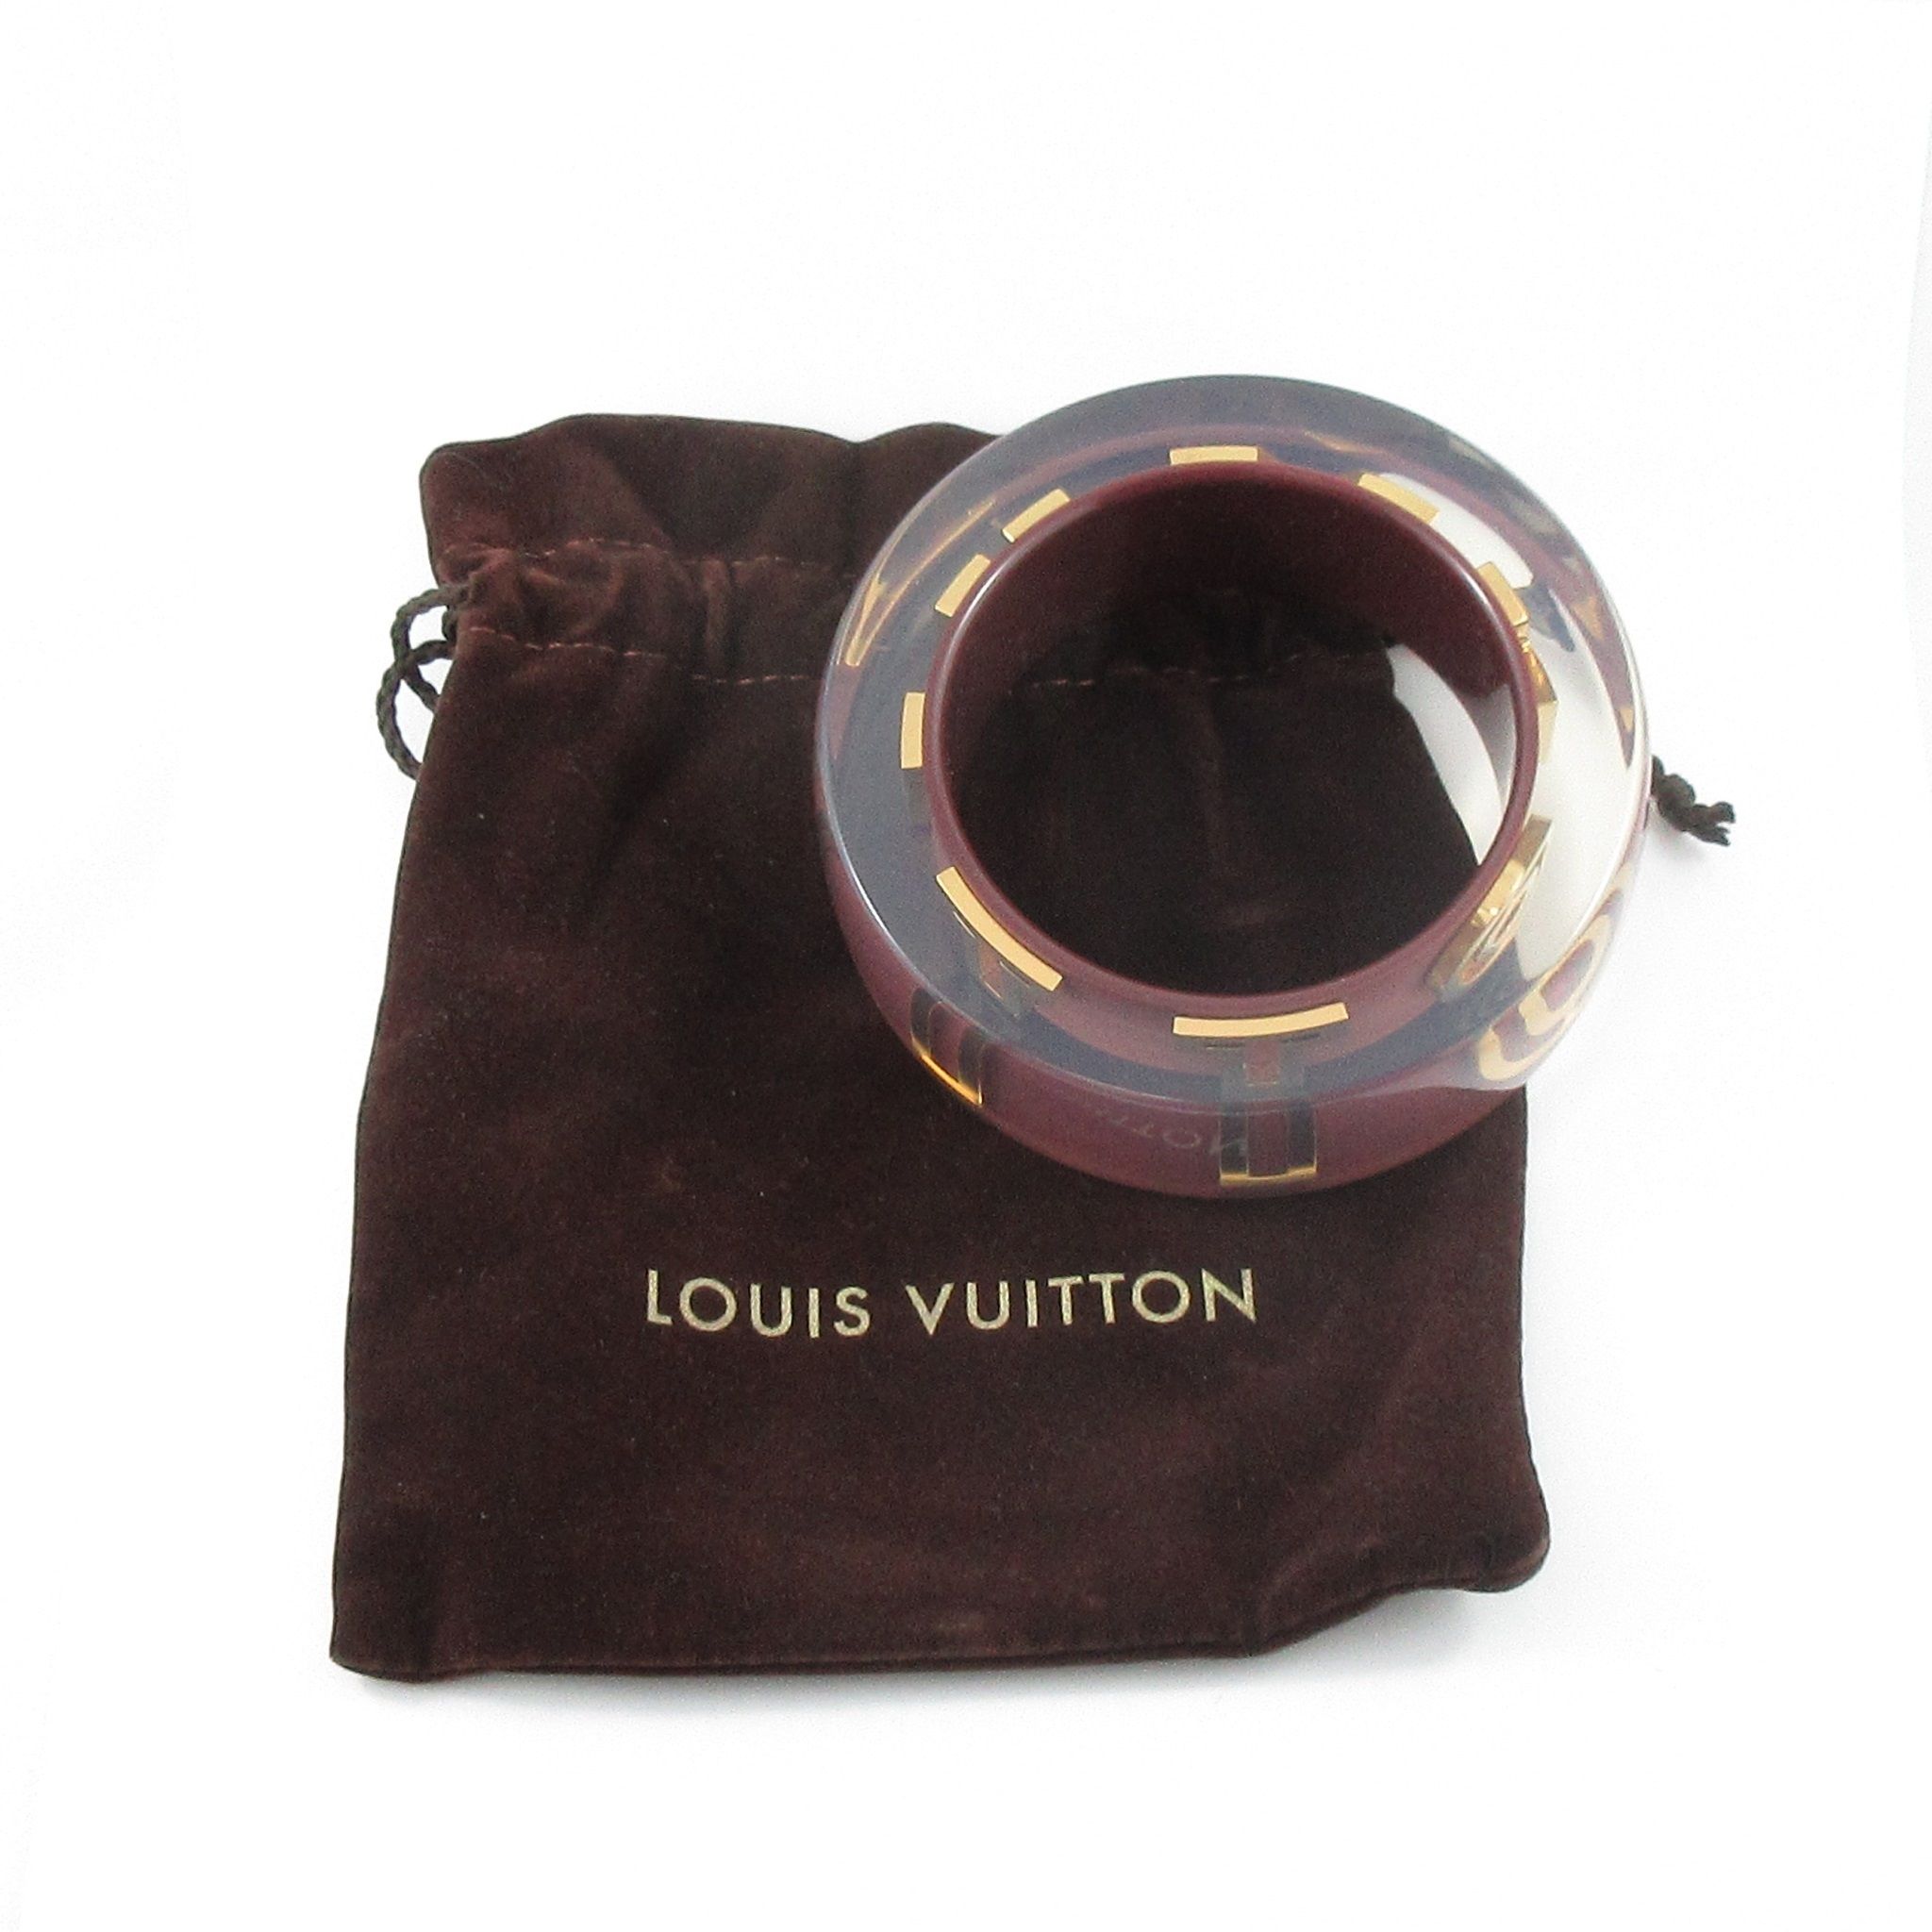 LOUIS VUITTON bangle bracelet - La Boîte à Bijoux